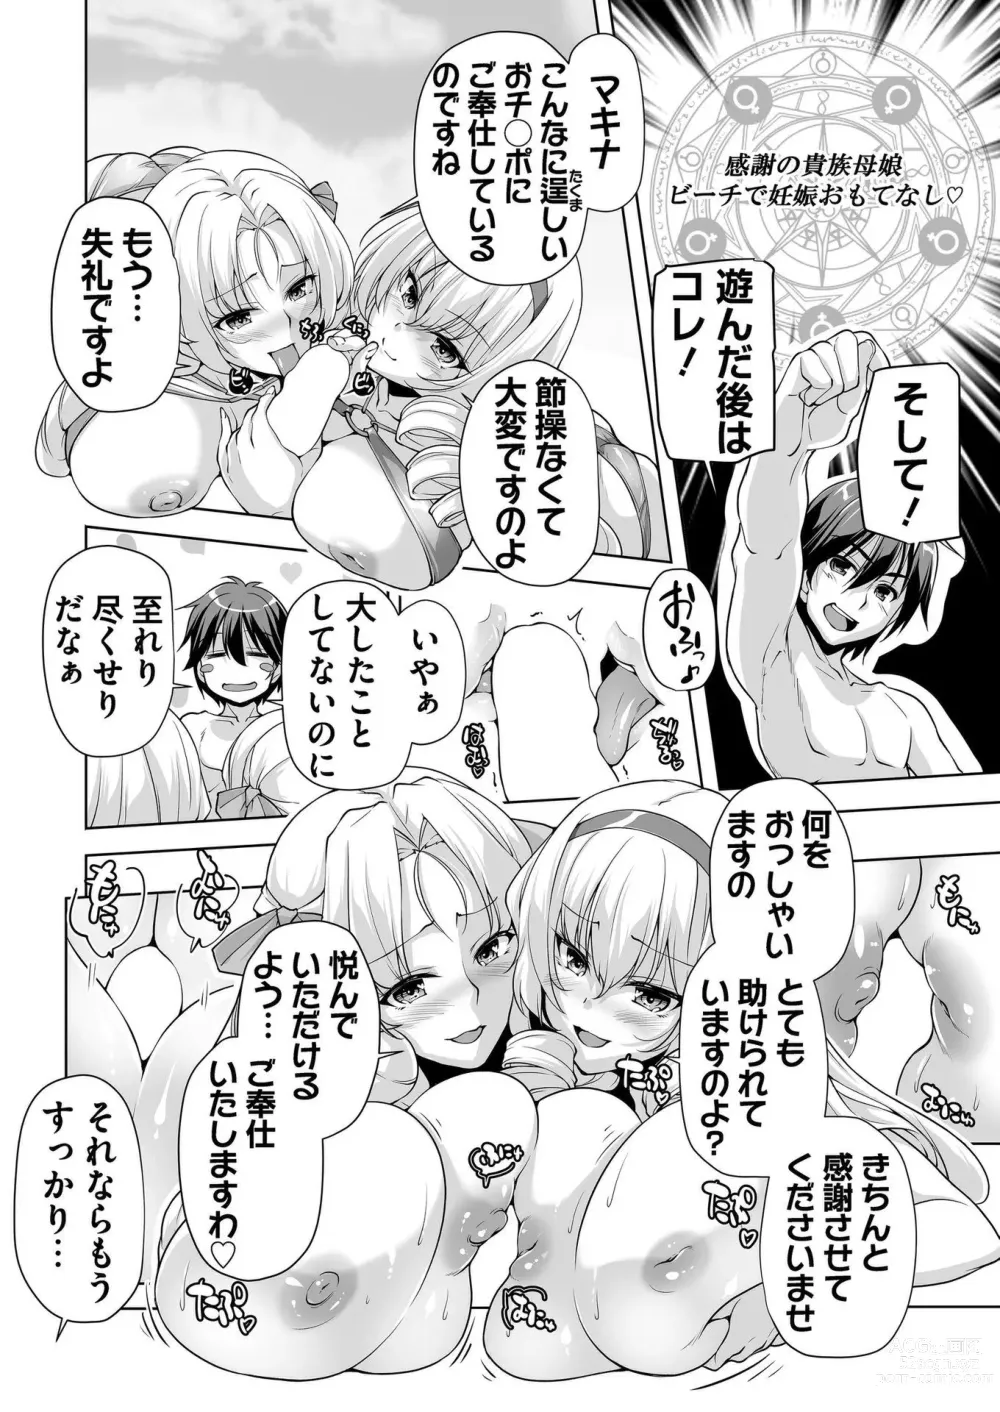 Page 188 of manga BugBug 2023-12